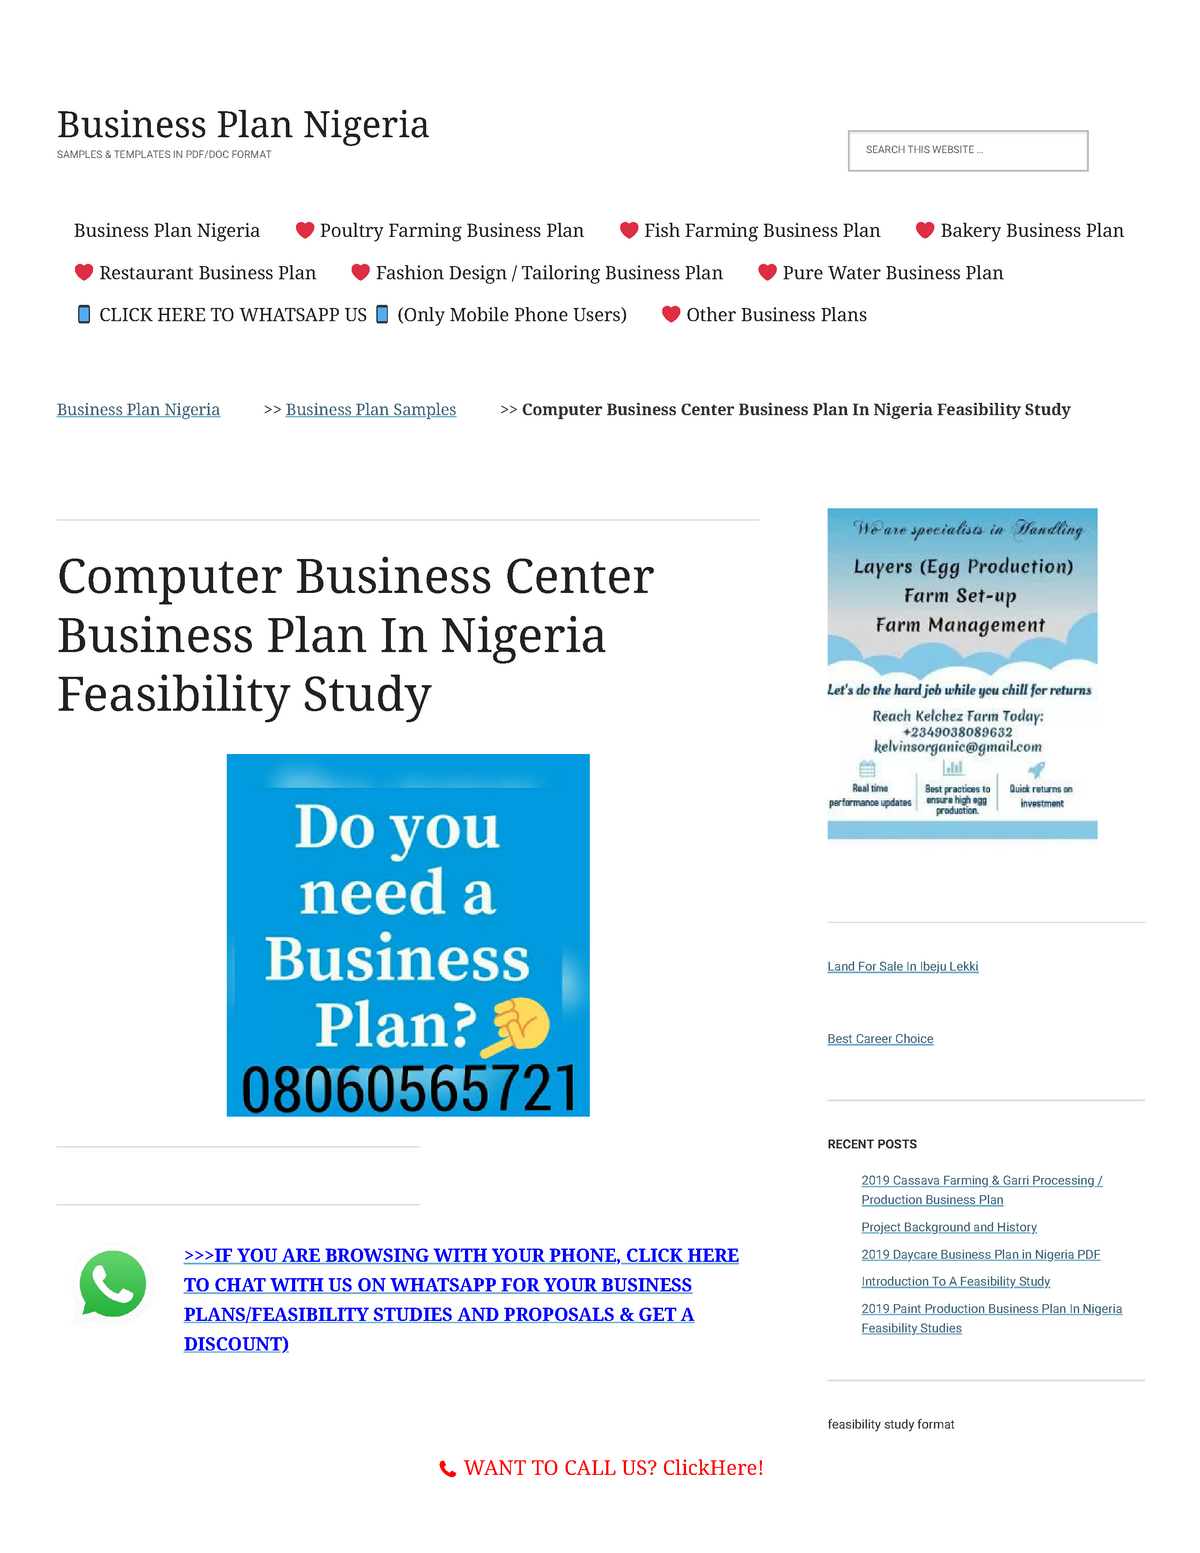 computer business center business plan